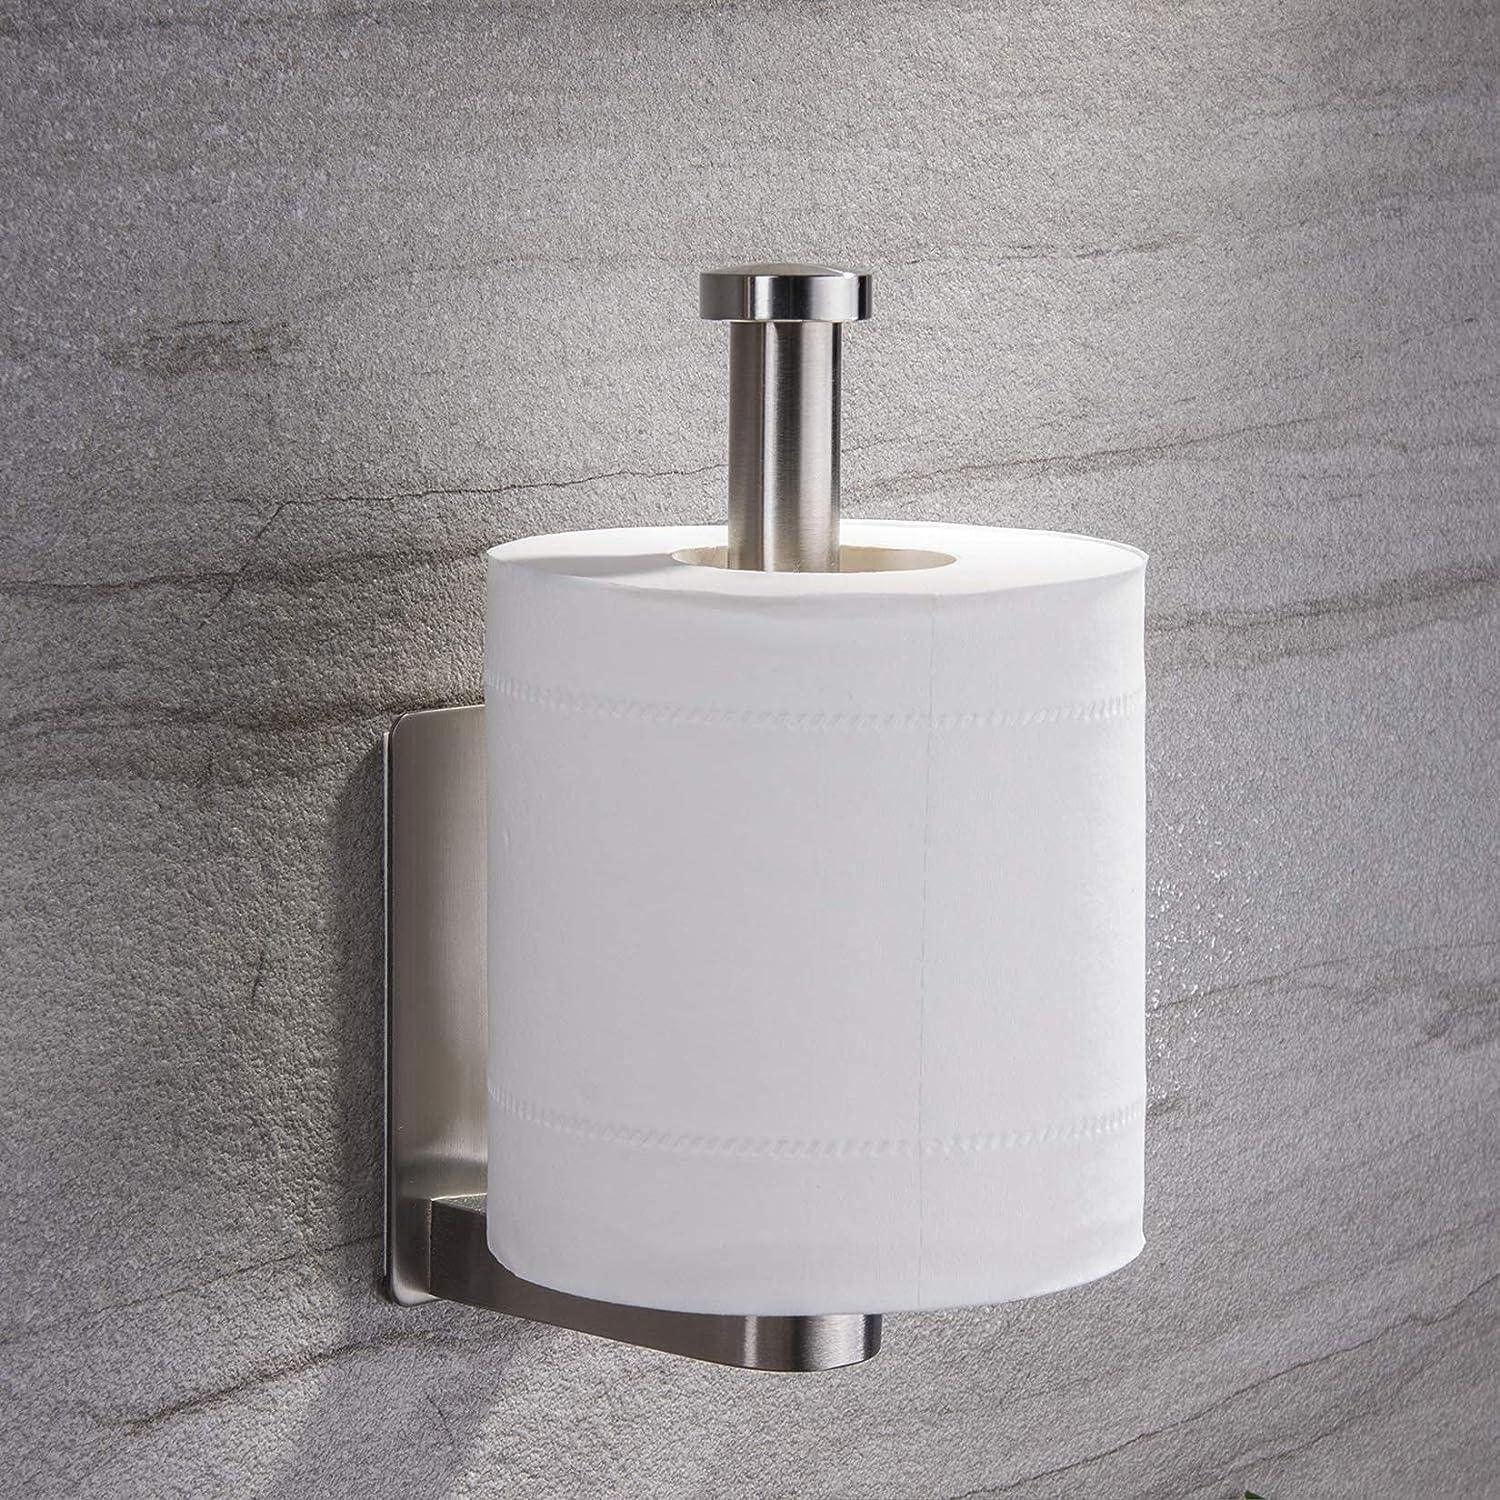 Soporte para papel higiénico con estante de madera, soporte adhesivo para  papel higiénico de montaje en pared, soporte para rollo de papel higiénico